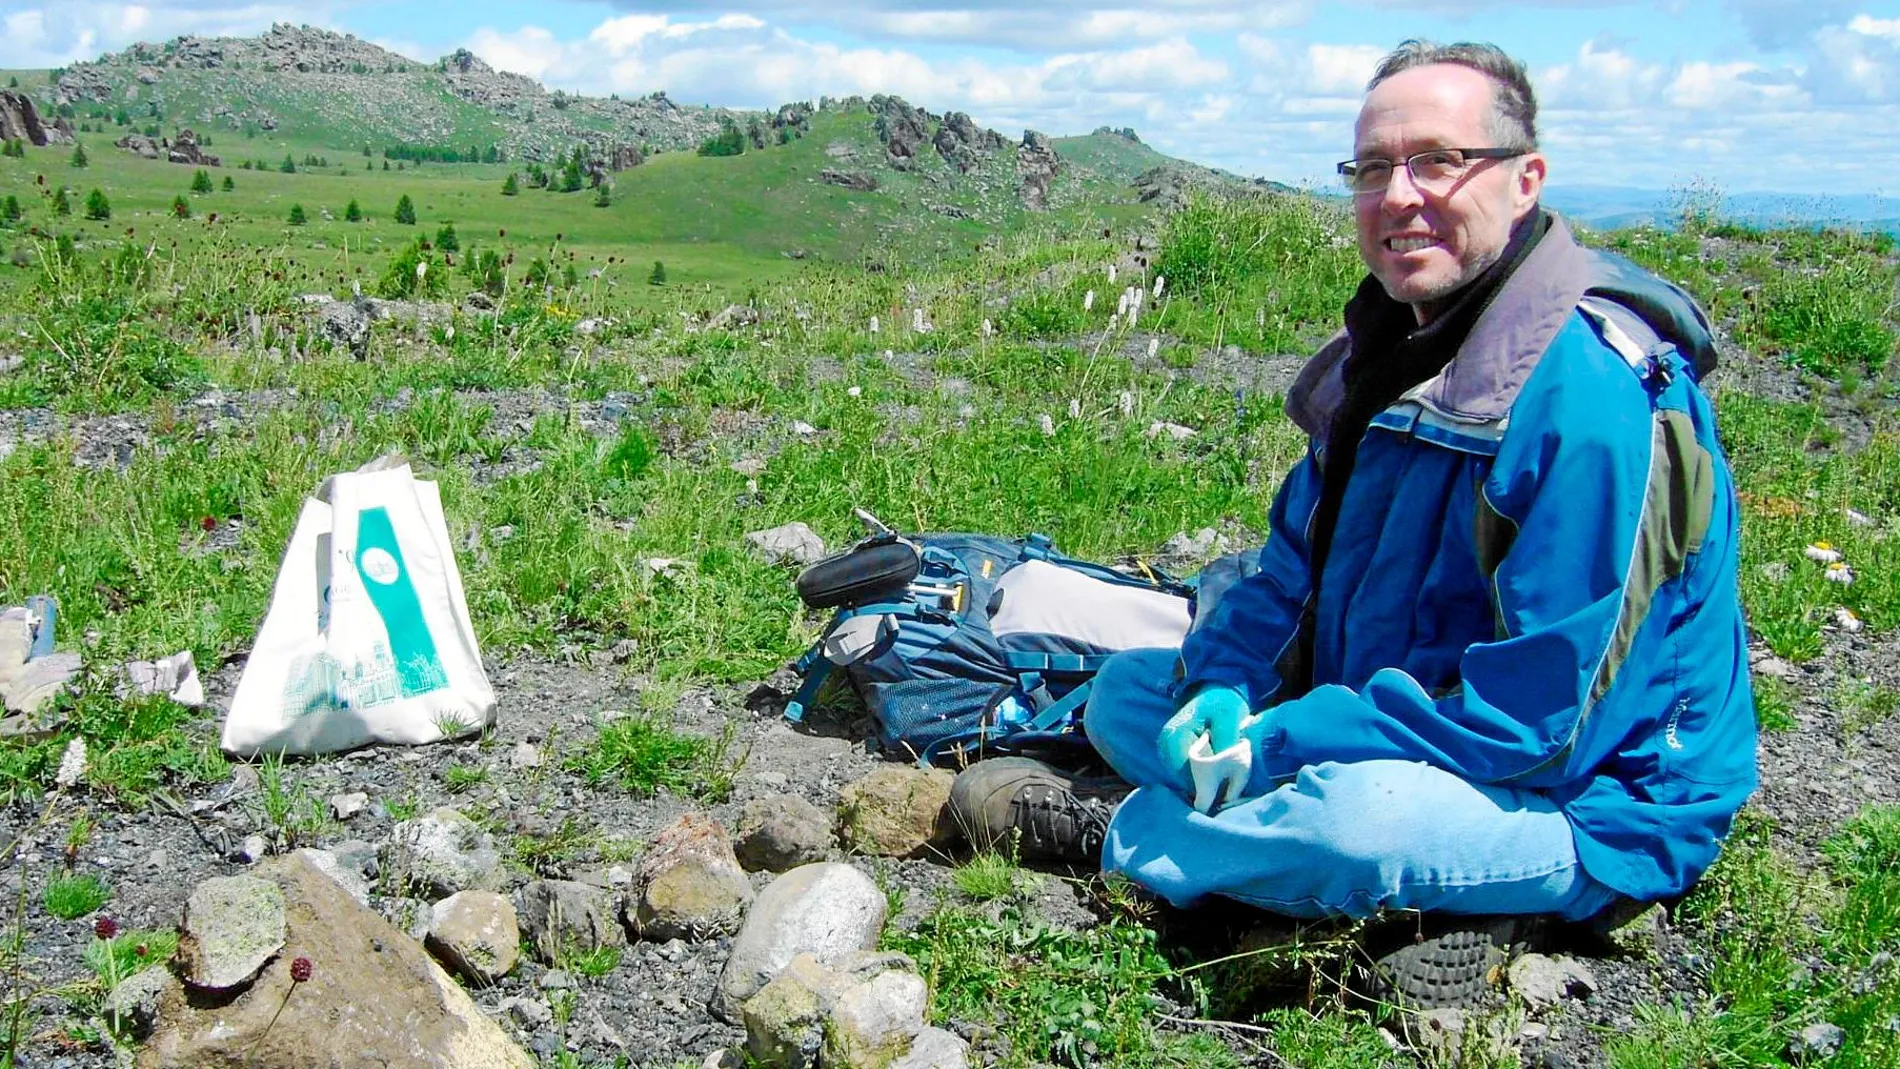 El científico Rick Carlson en una imagen tomada en Mongolia con ejemplos de rocas (eso sí, terrestres)